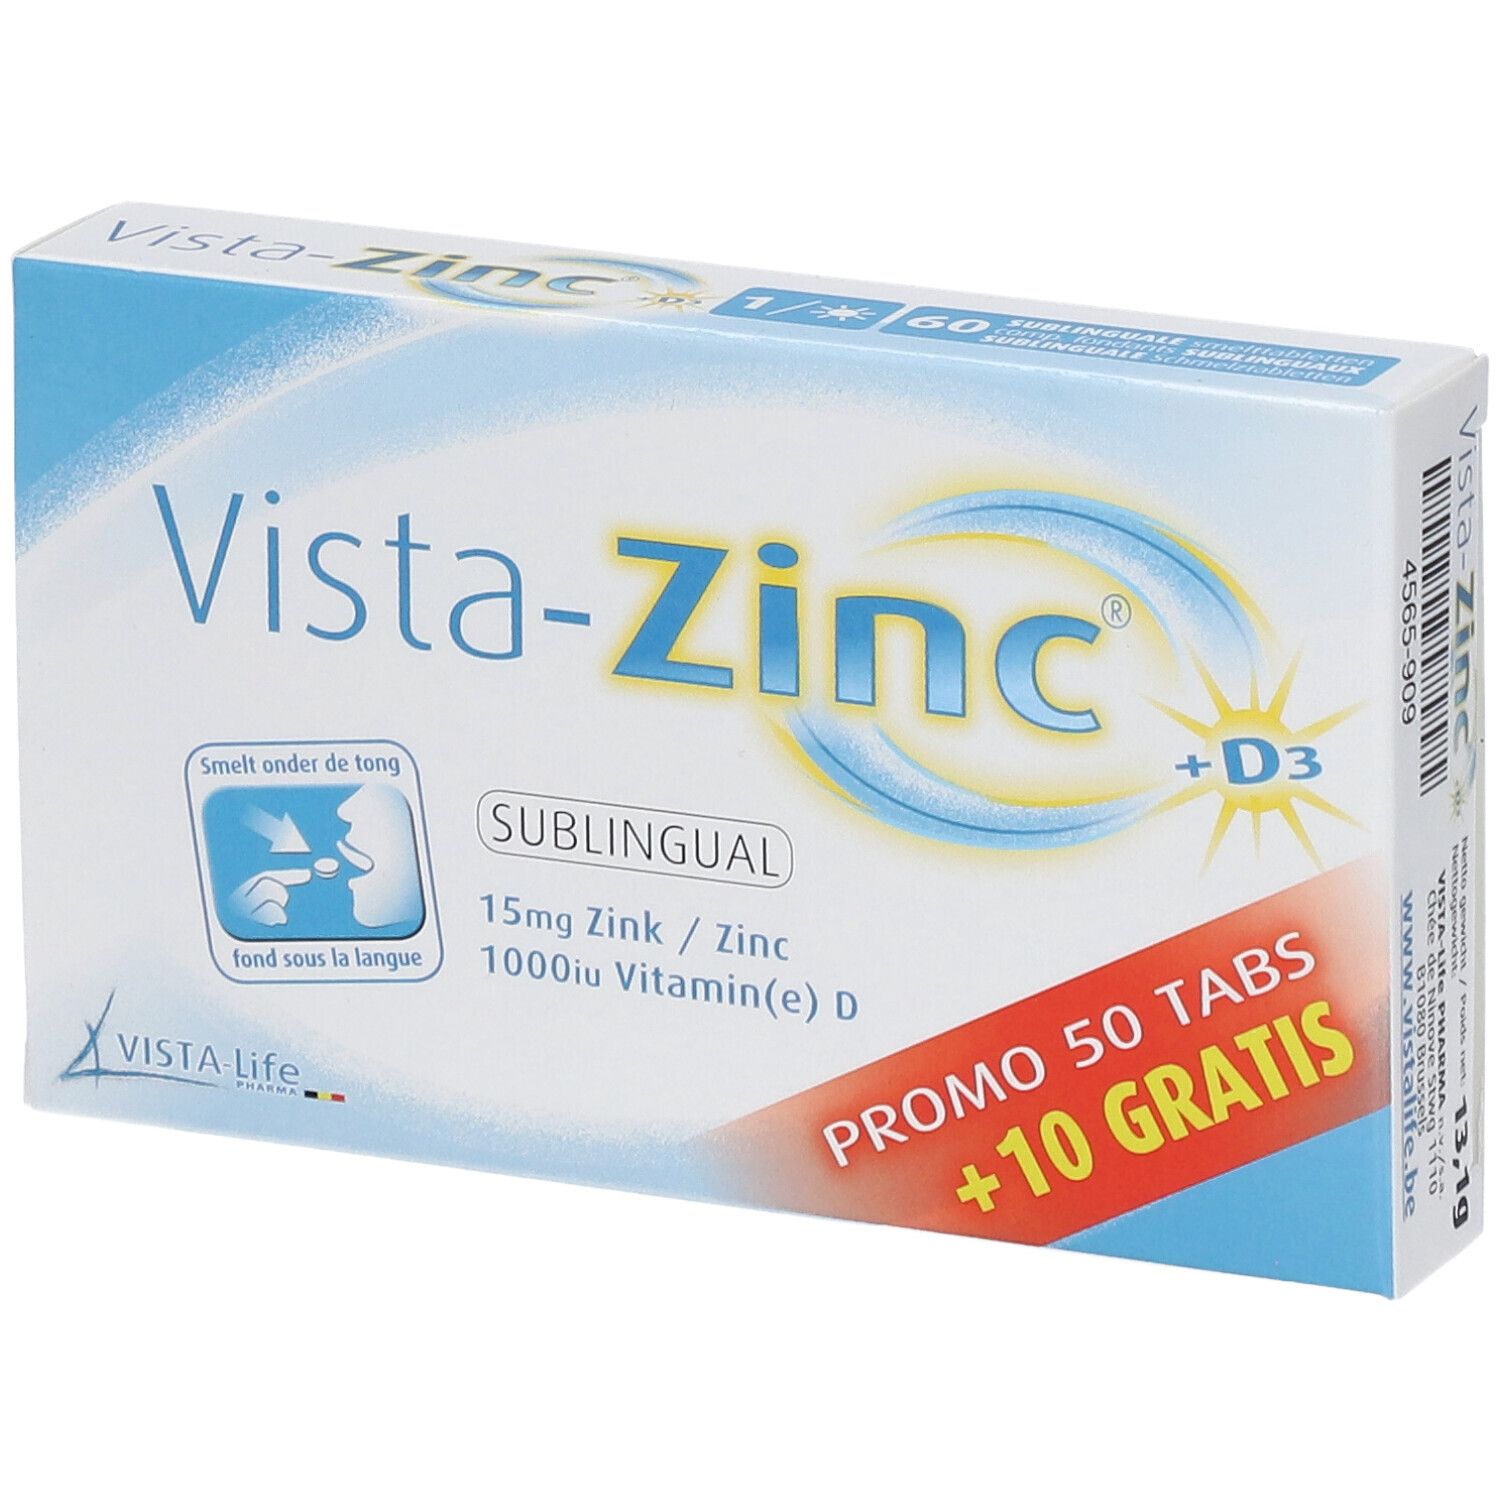 Vista-Zinc + D3